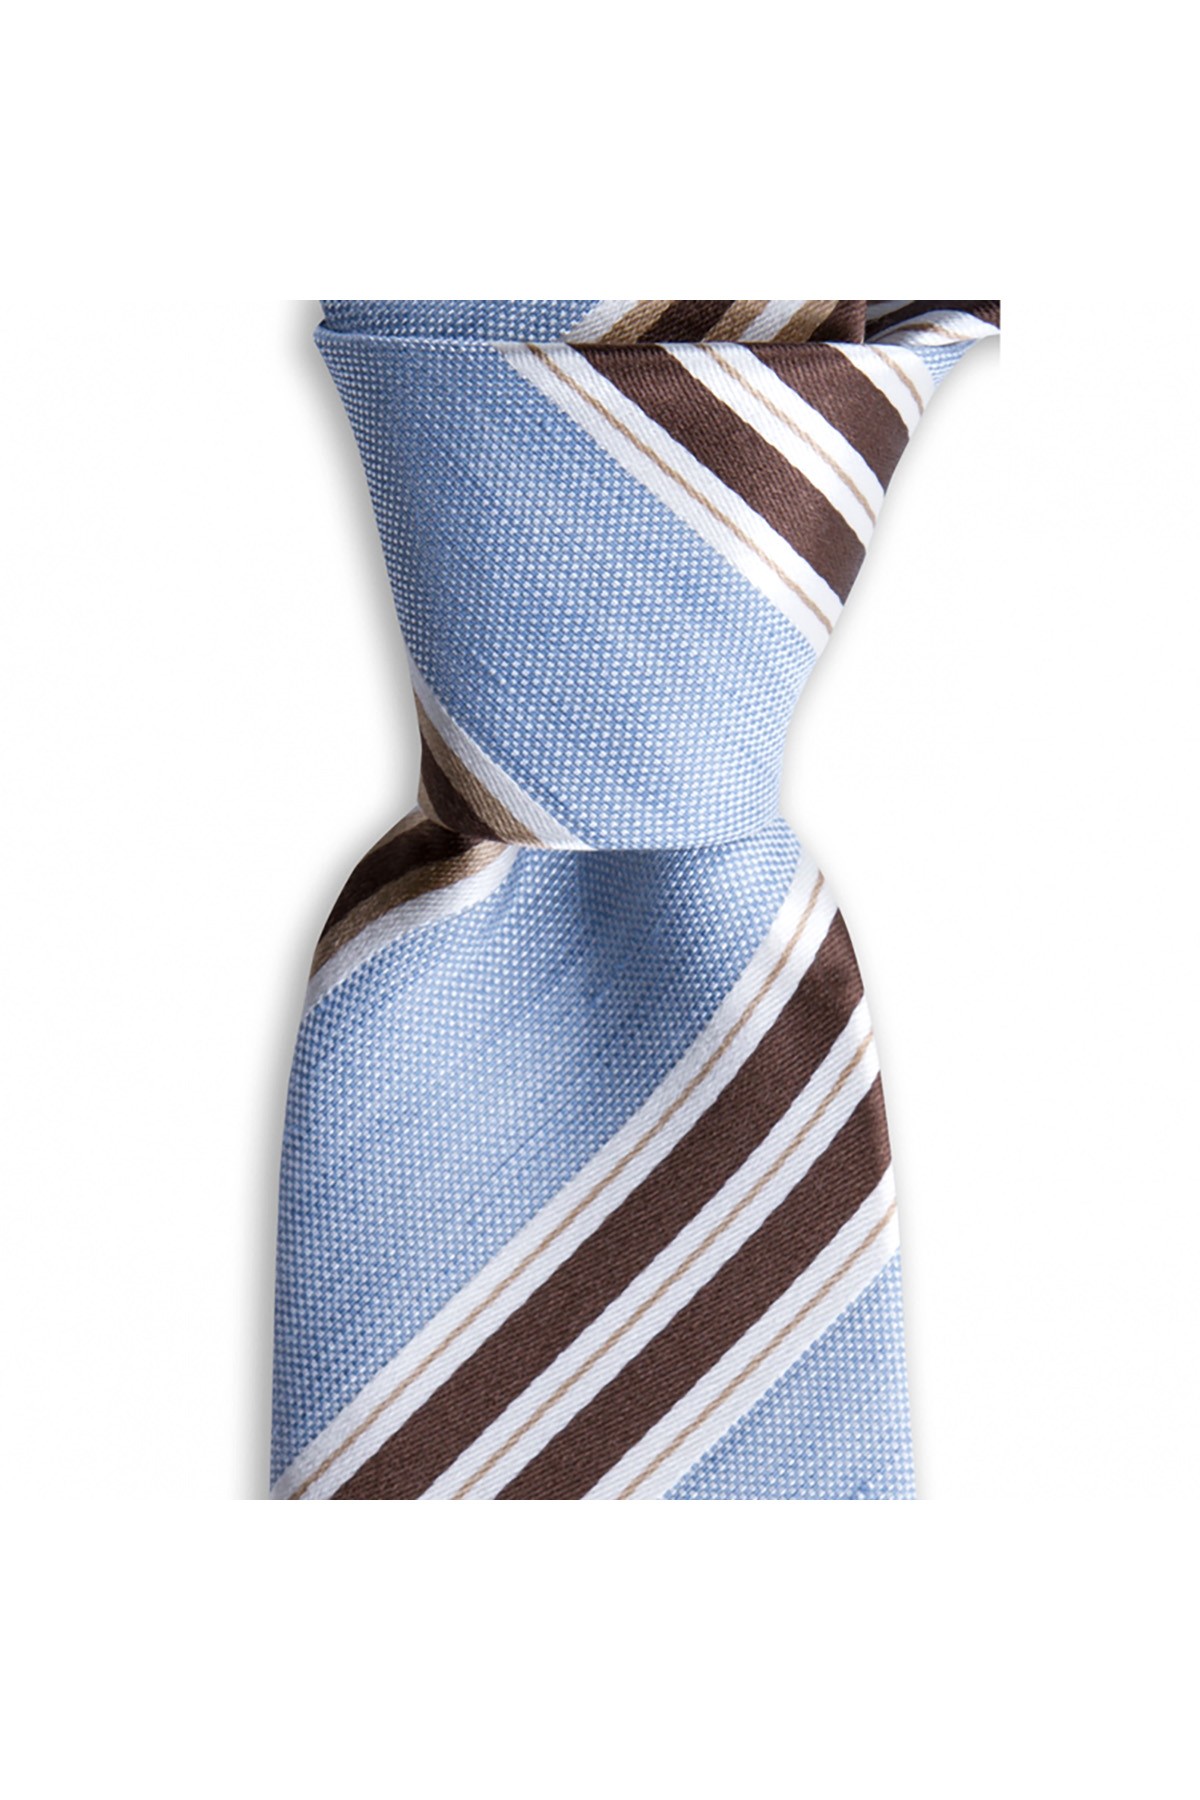 Klasik çizgili 8 cm genişliğinde keten ve ipek karışımlı kravat - Açık mavi